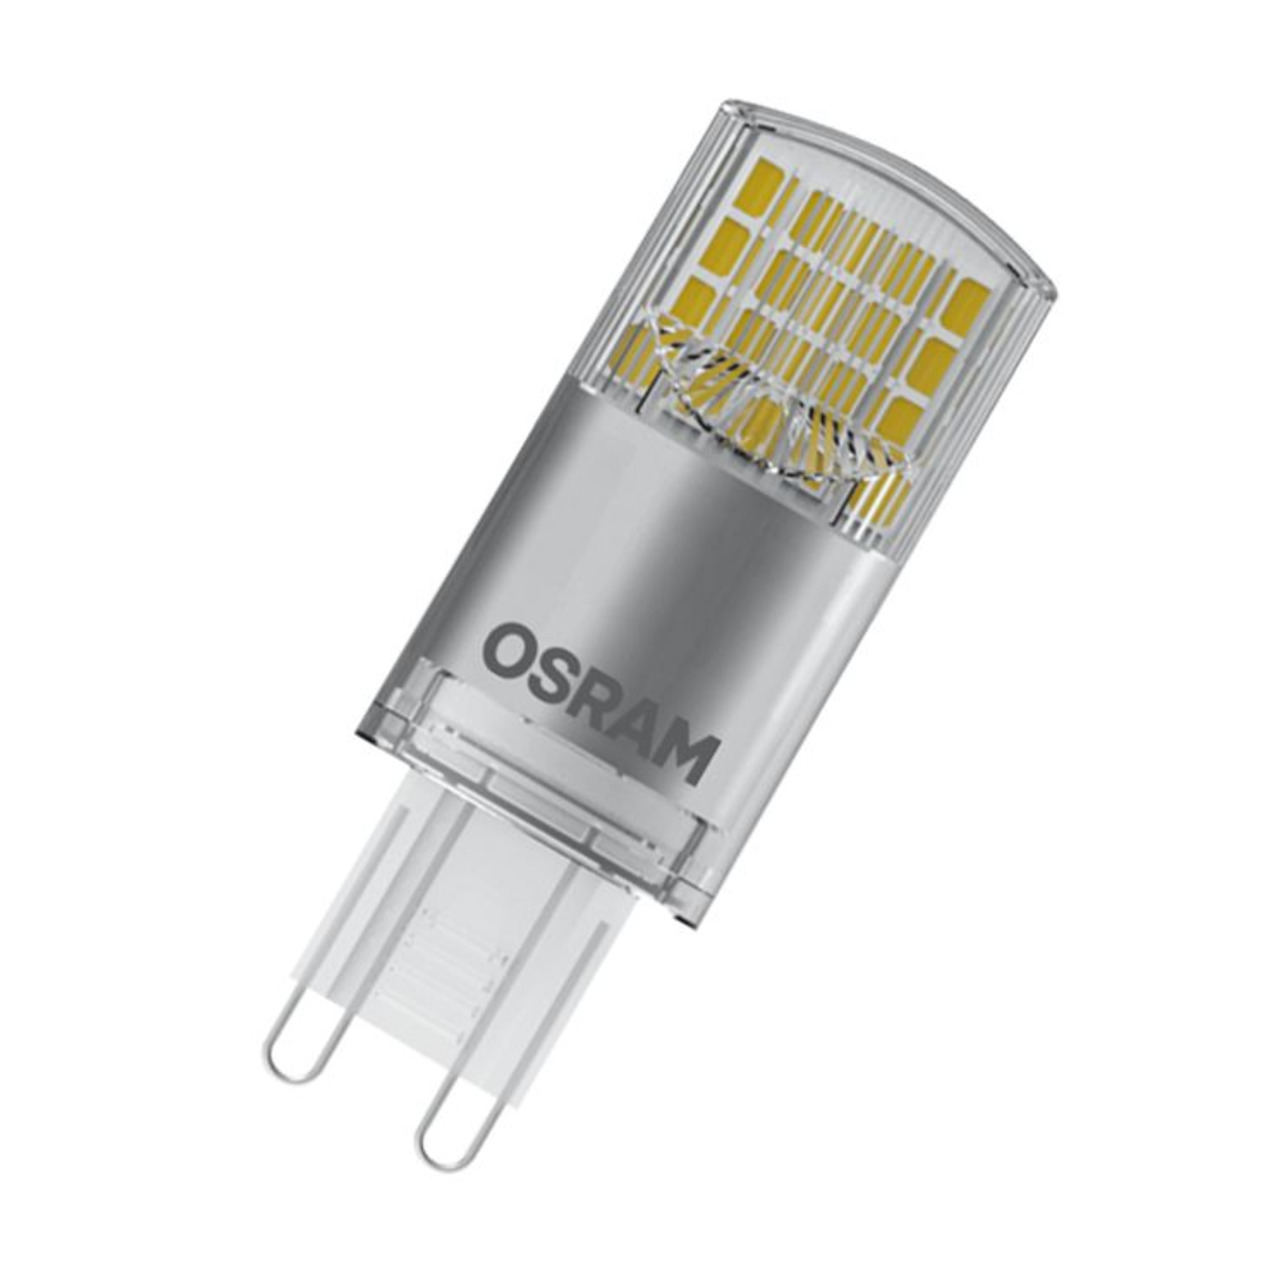 OSRAM 4-2-W-LED-Lampe T20- G9- 470 lm- neutralweiss unter Beleuchtung